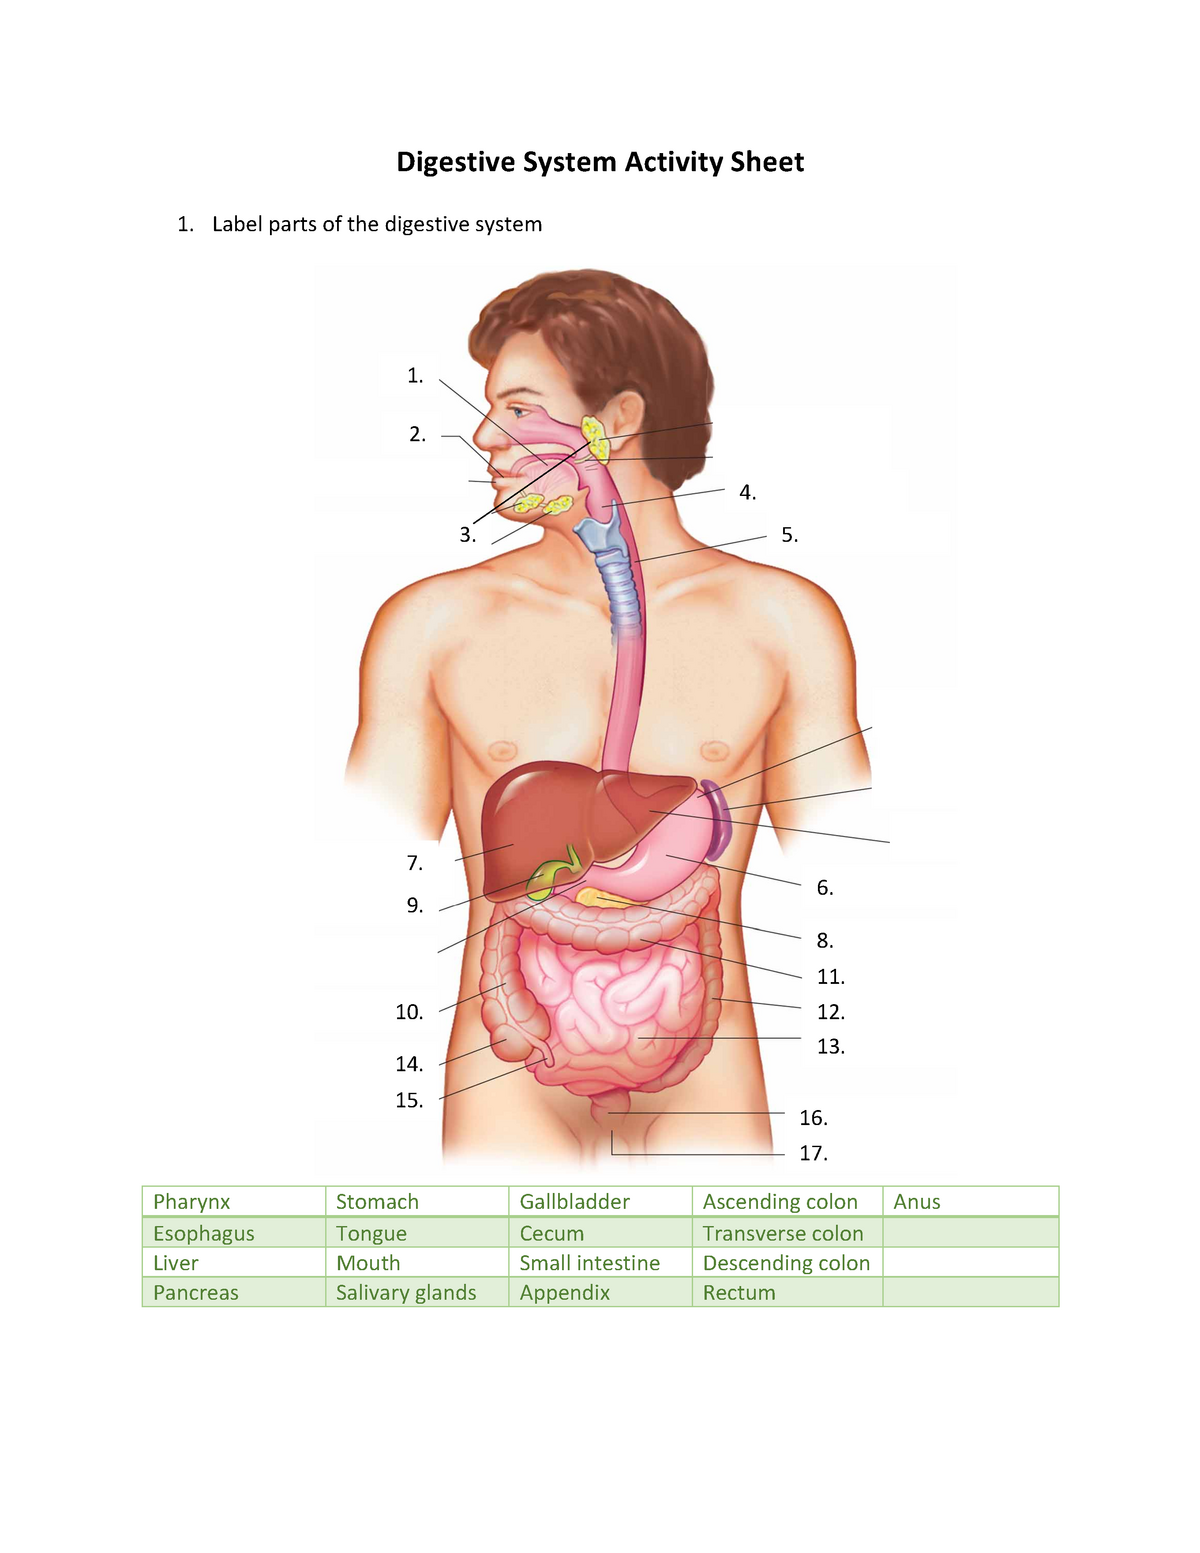 Digestive System Activity Sheet - Digestive System Activity Sheet For Digestive System Worksheet Answer Key